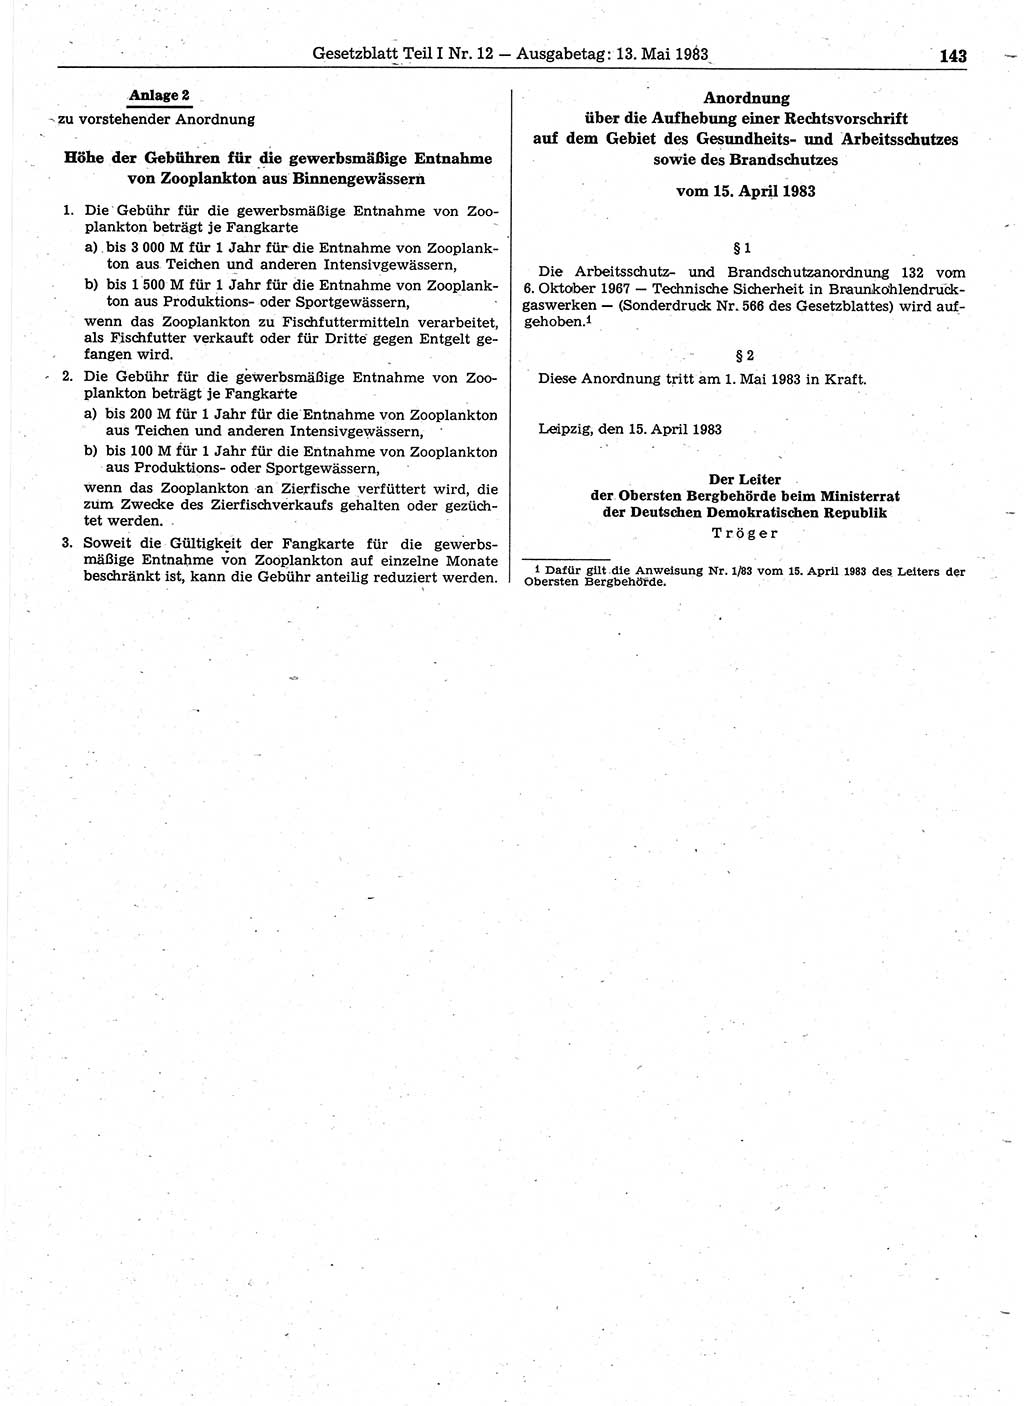 Gesetzblatt (GBl.) der Deutschen Demokratischen Republik (DDR) Teil Ⅰ 1983, Seite 143 (GBl. DDR Ⅰ 1983, S. 143)